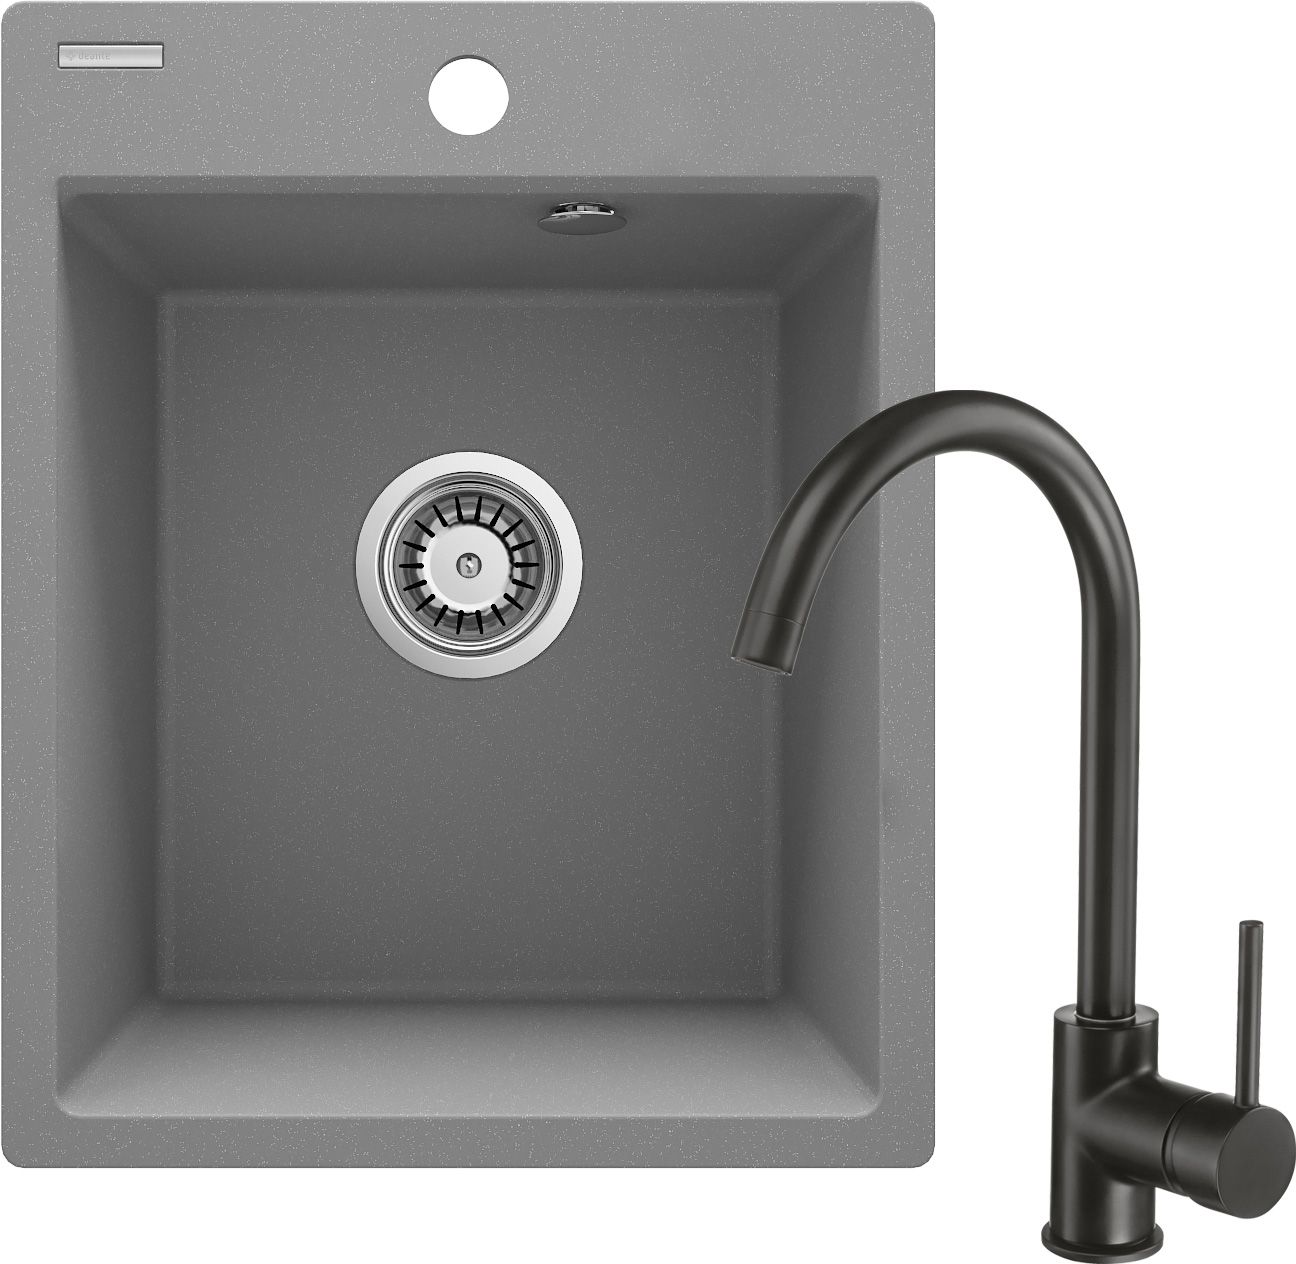 Évier en granit avec robinet, 1 bac - ZRCBS103 - Główne zdjęcie produktowe